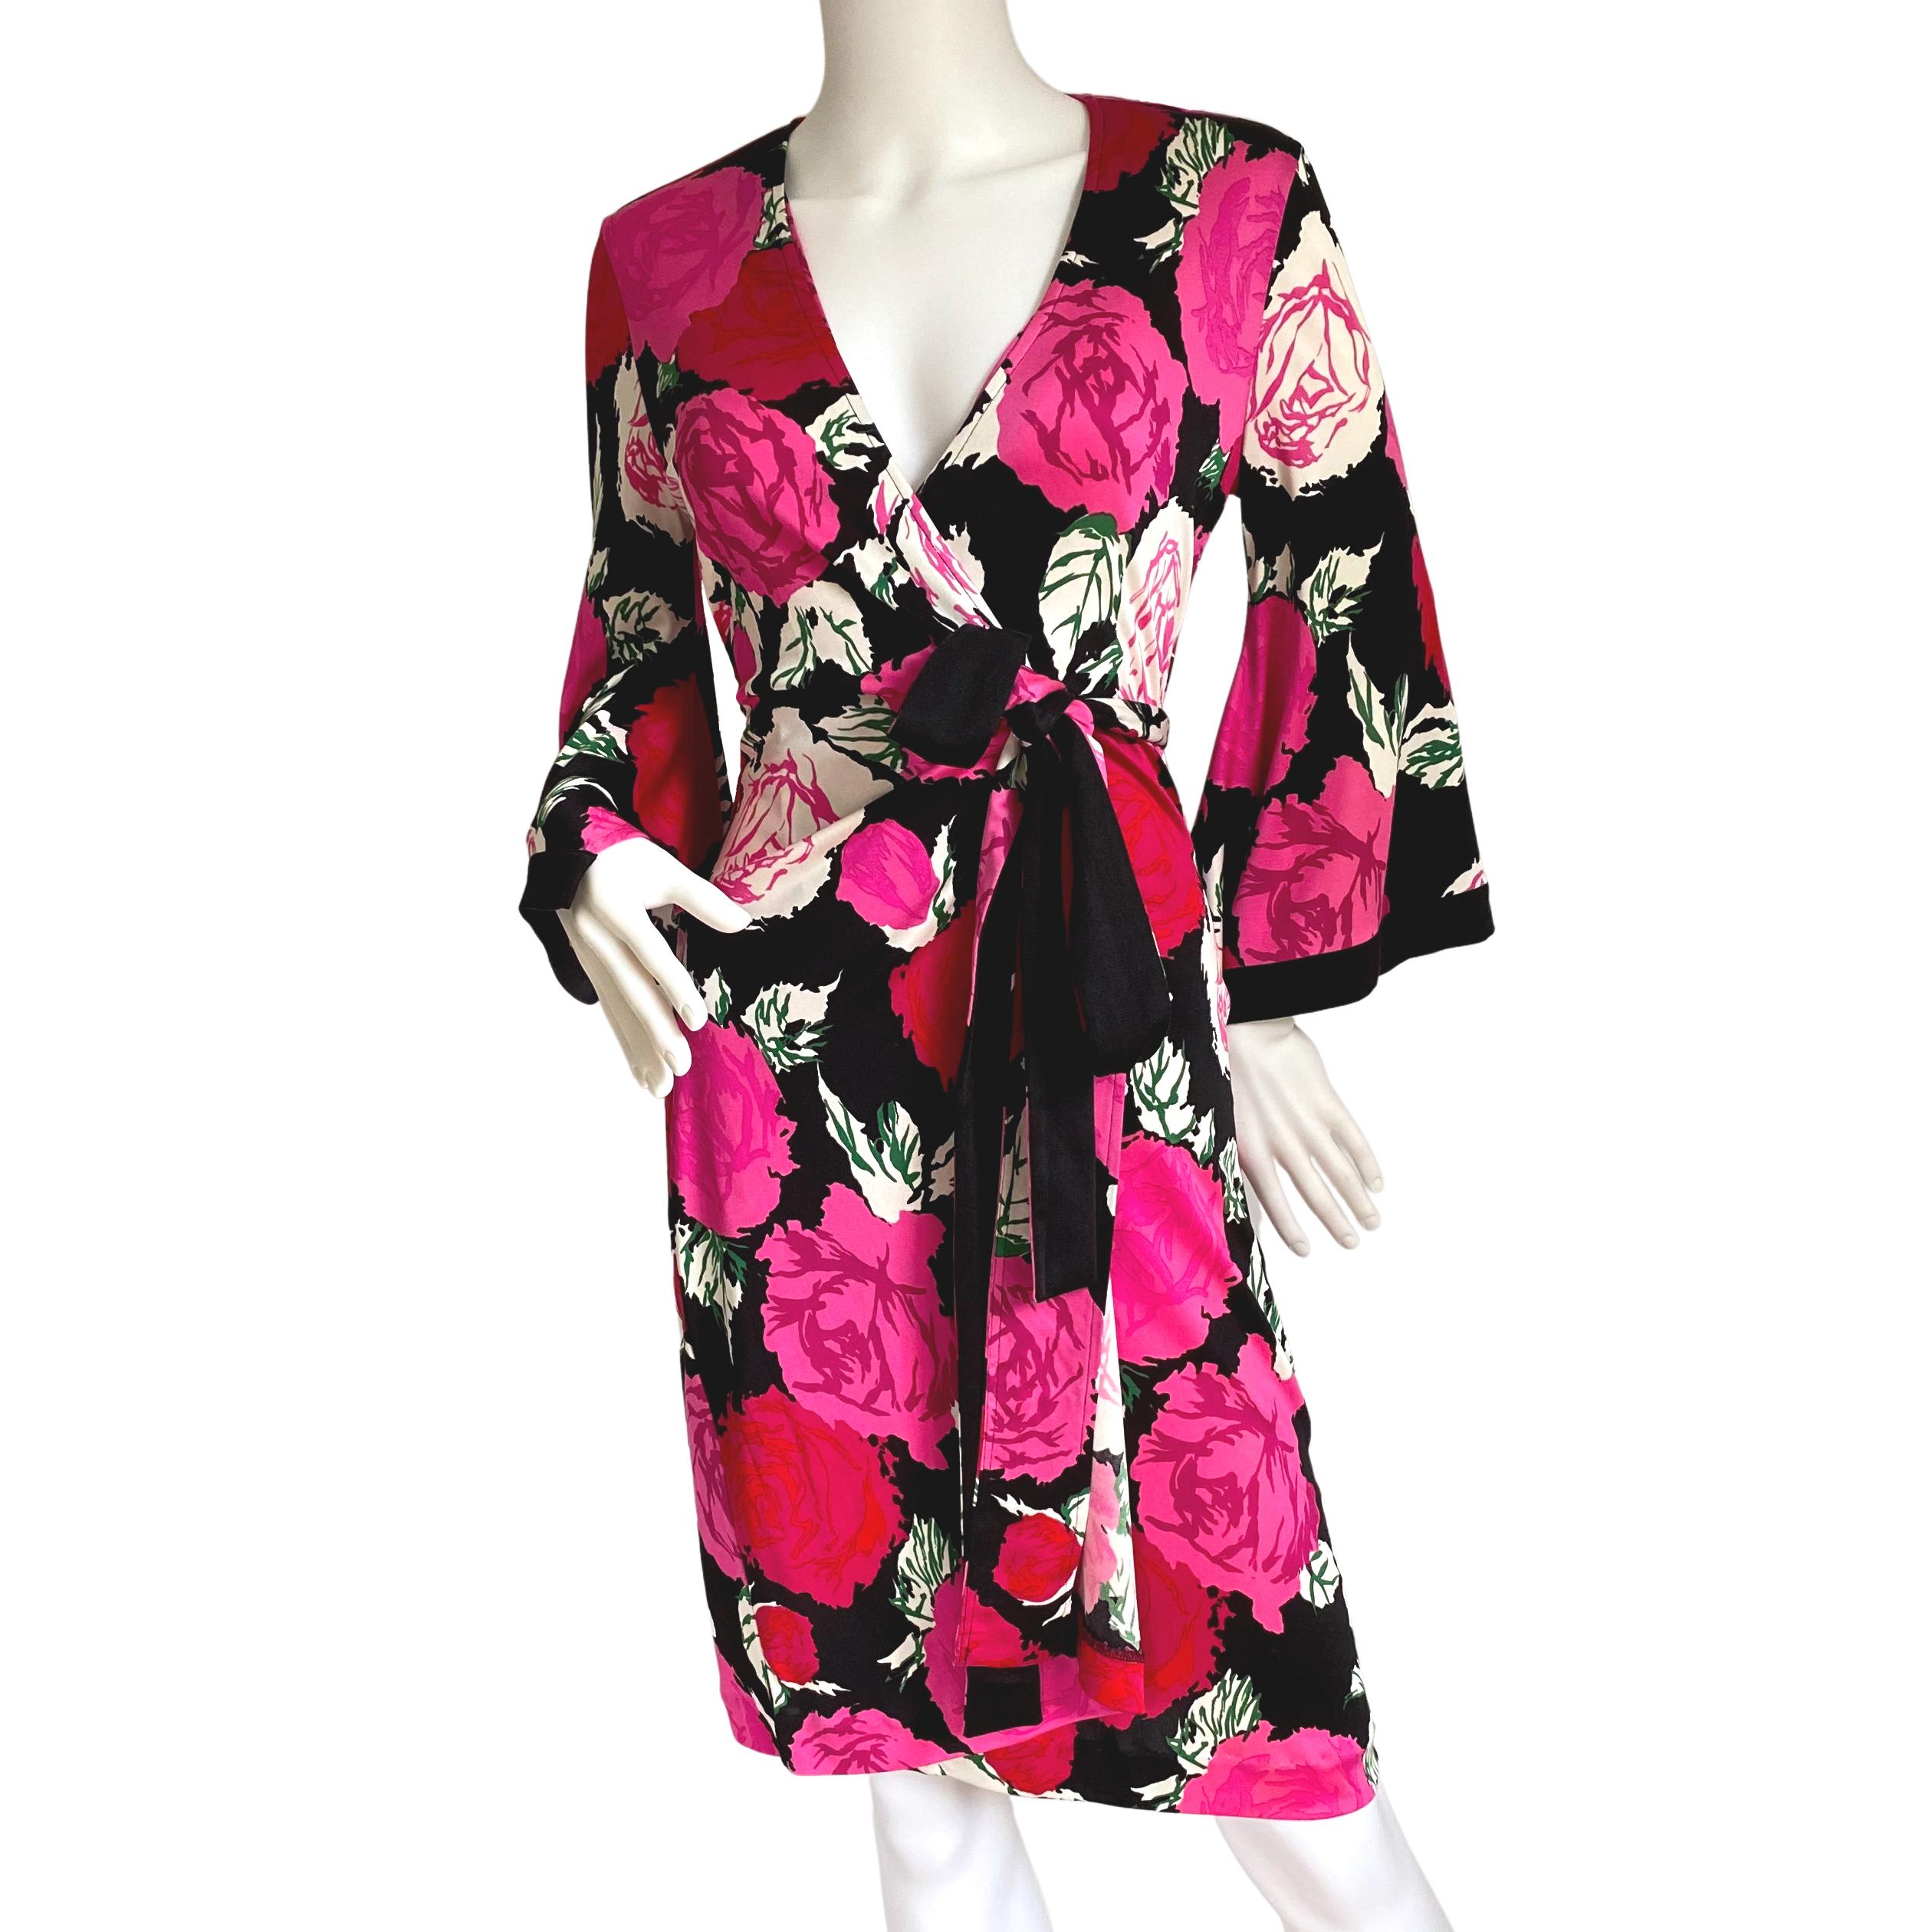 Robe portefeuille Trueing avec manche kimono.
Impression : Roses grimpantes rose foncé et rouge sur fond noir, bordées de noir.
Les robes en soie de FLORA KUNG sont fabriquées dans un fil de soie à long filament de première qualité, qui donne un